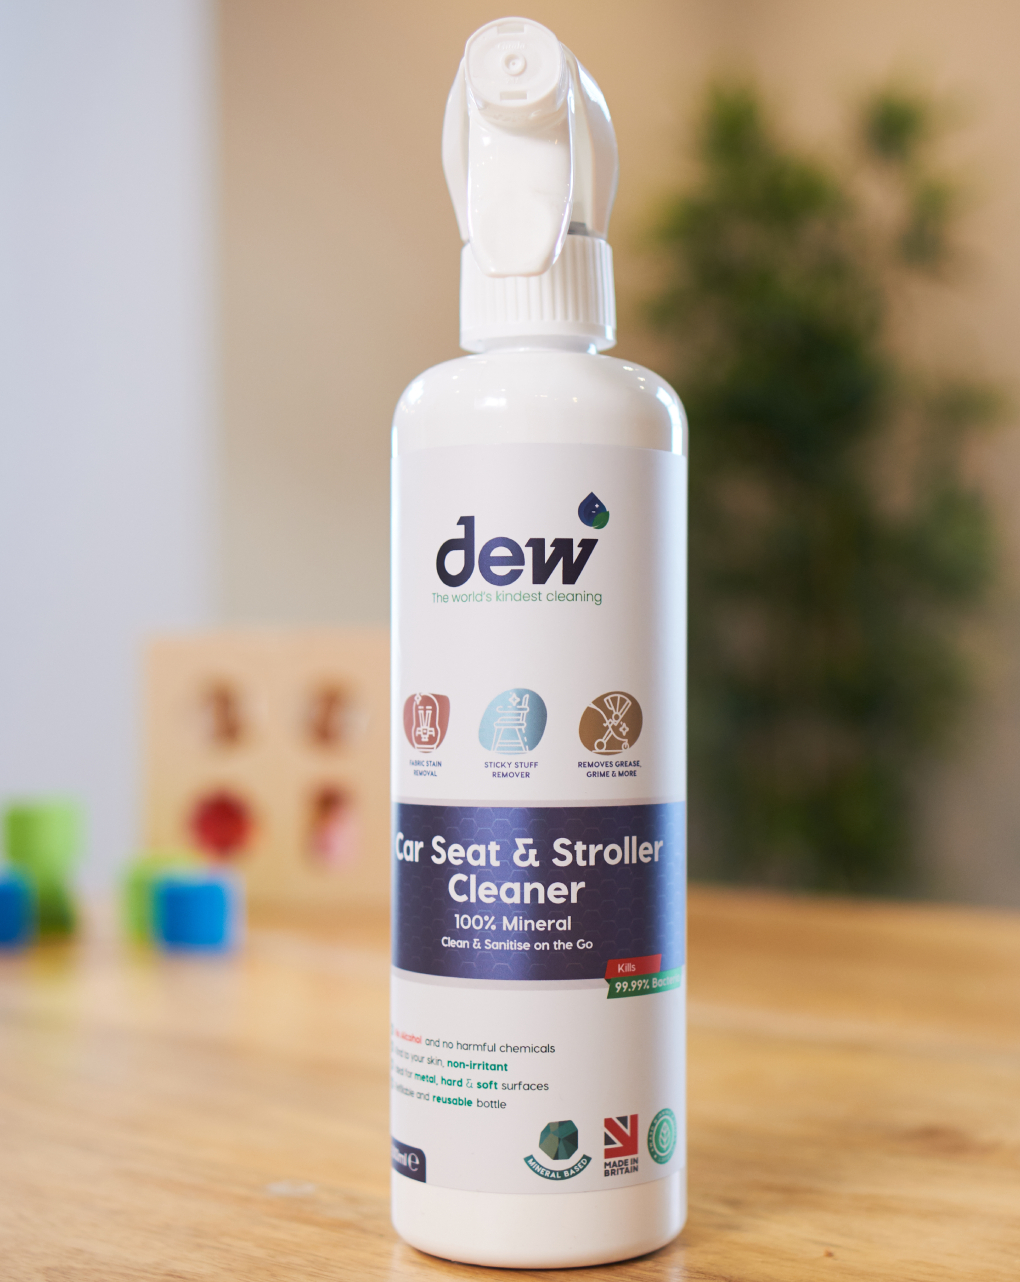 Dew καθαριστικό-απολυμαντικό καροτσιού/ καθίσματος αυτοκινήτου, χωρίς τοξικά χημικά, 500ml - Dew